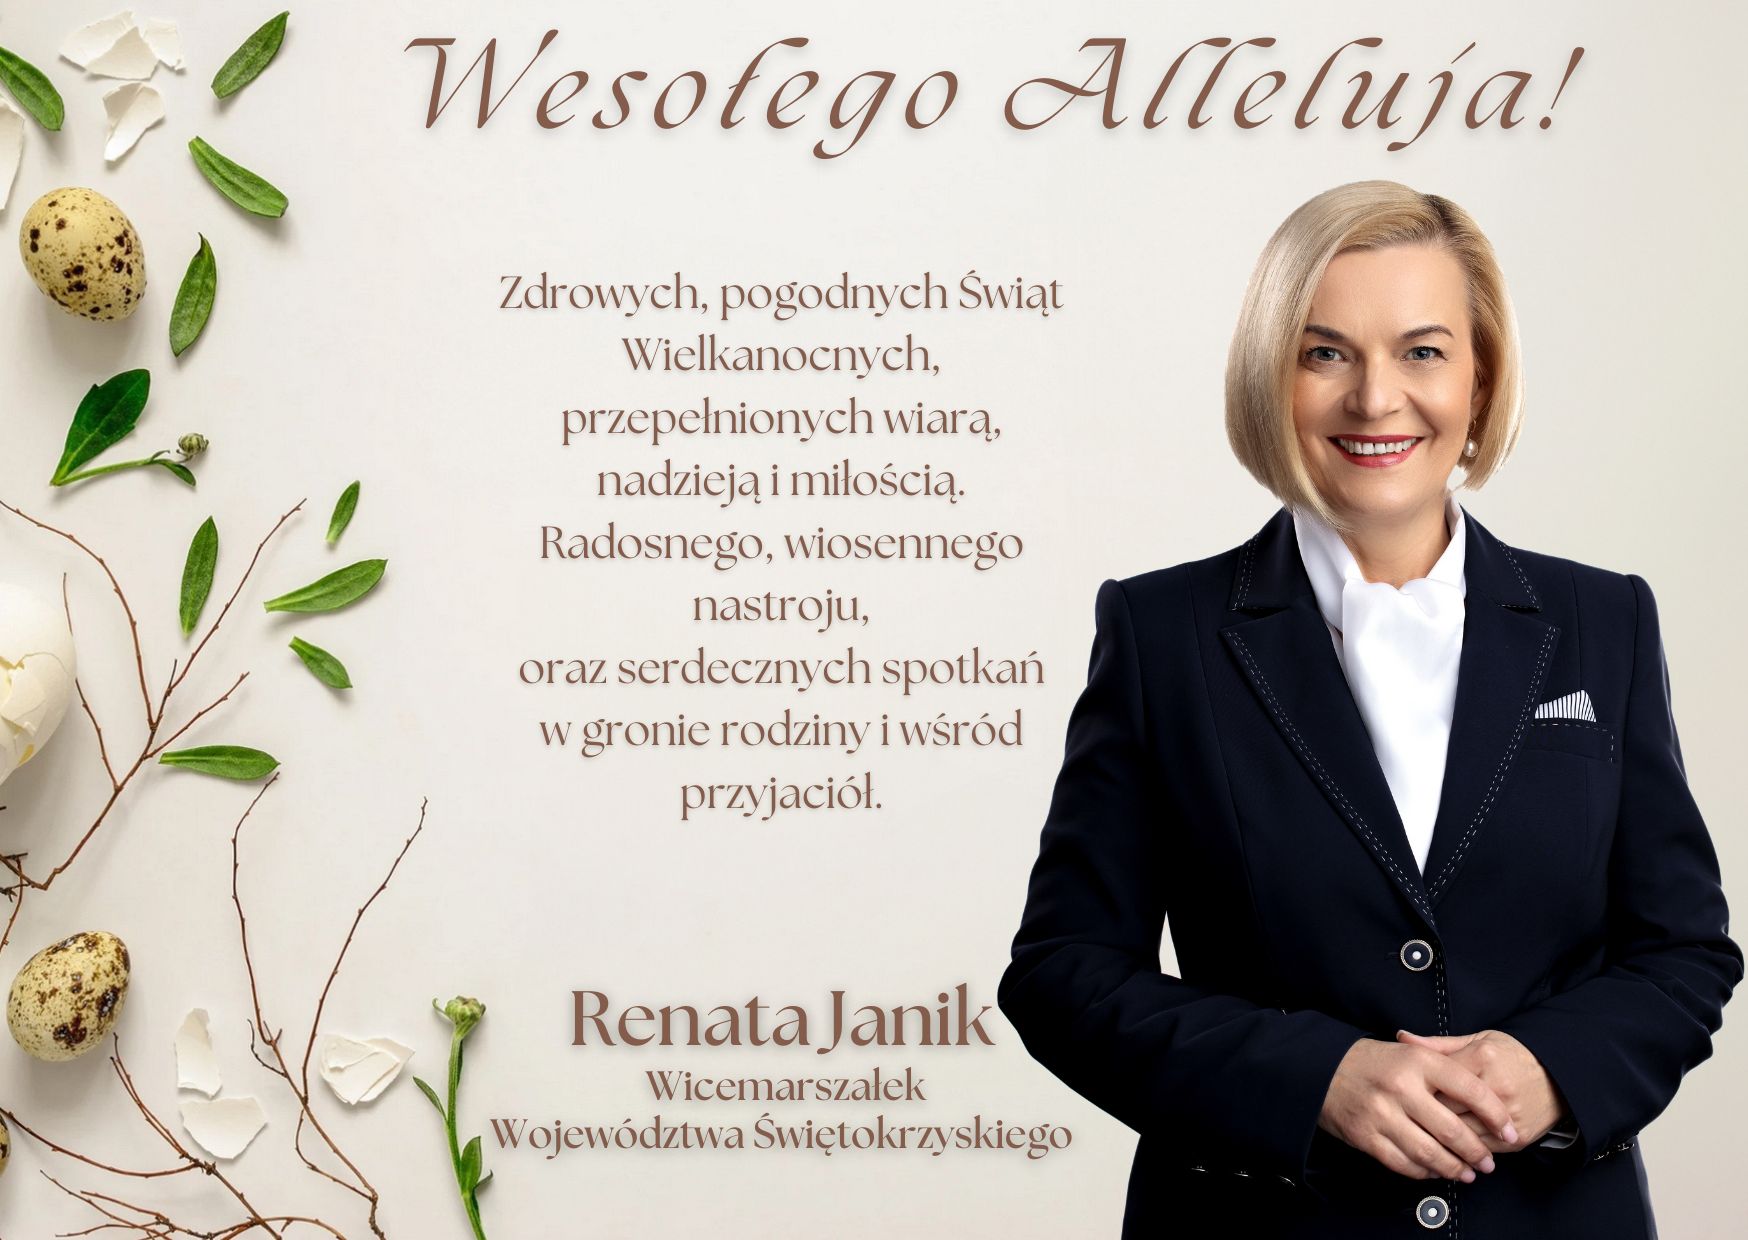 życzenia wielkanocne Pani Renaty Janik Wicemarszałek Województwa Świętokrzyskiego